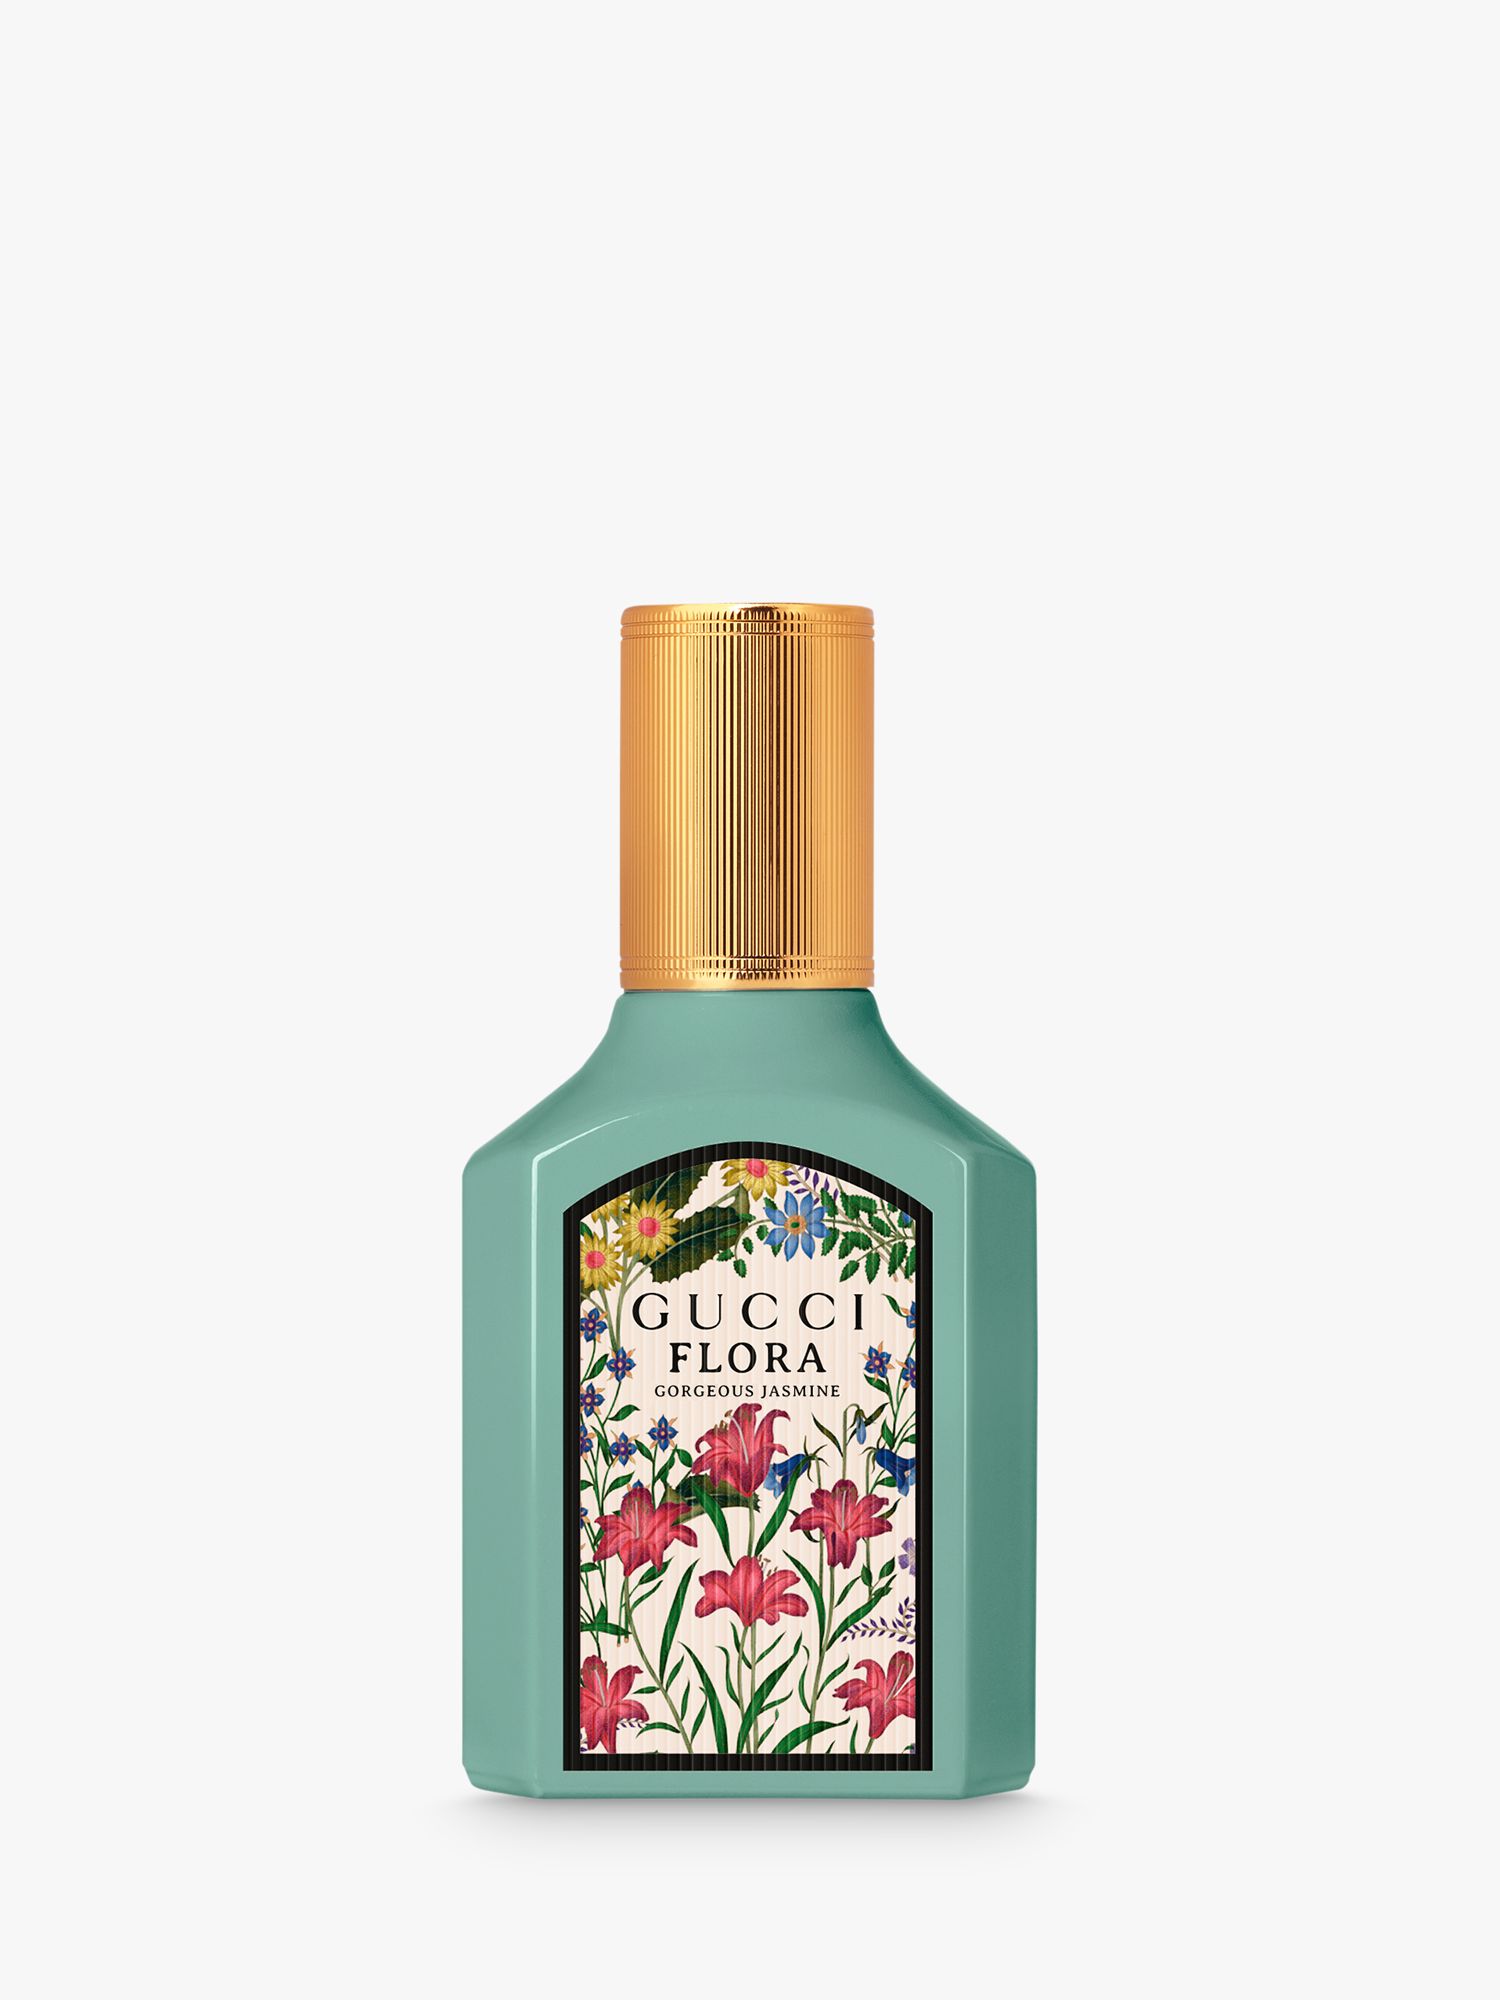 Gucci Flora Gorgeous Gardenia, 100ml, Eau De Parfum | designbyiconica.com